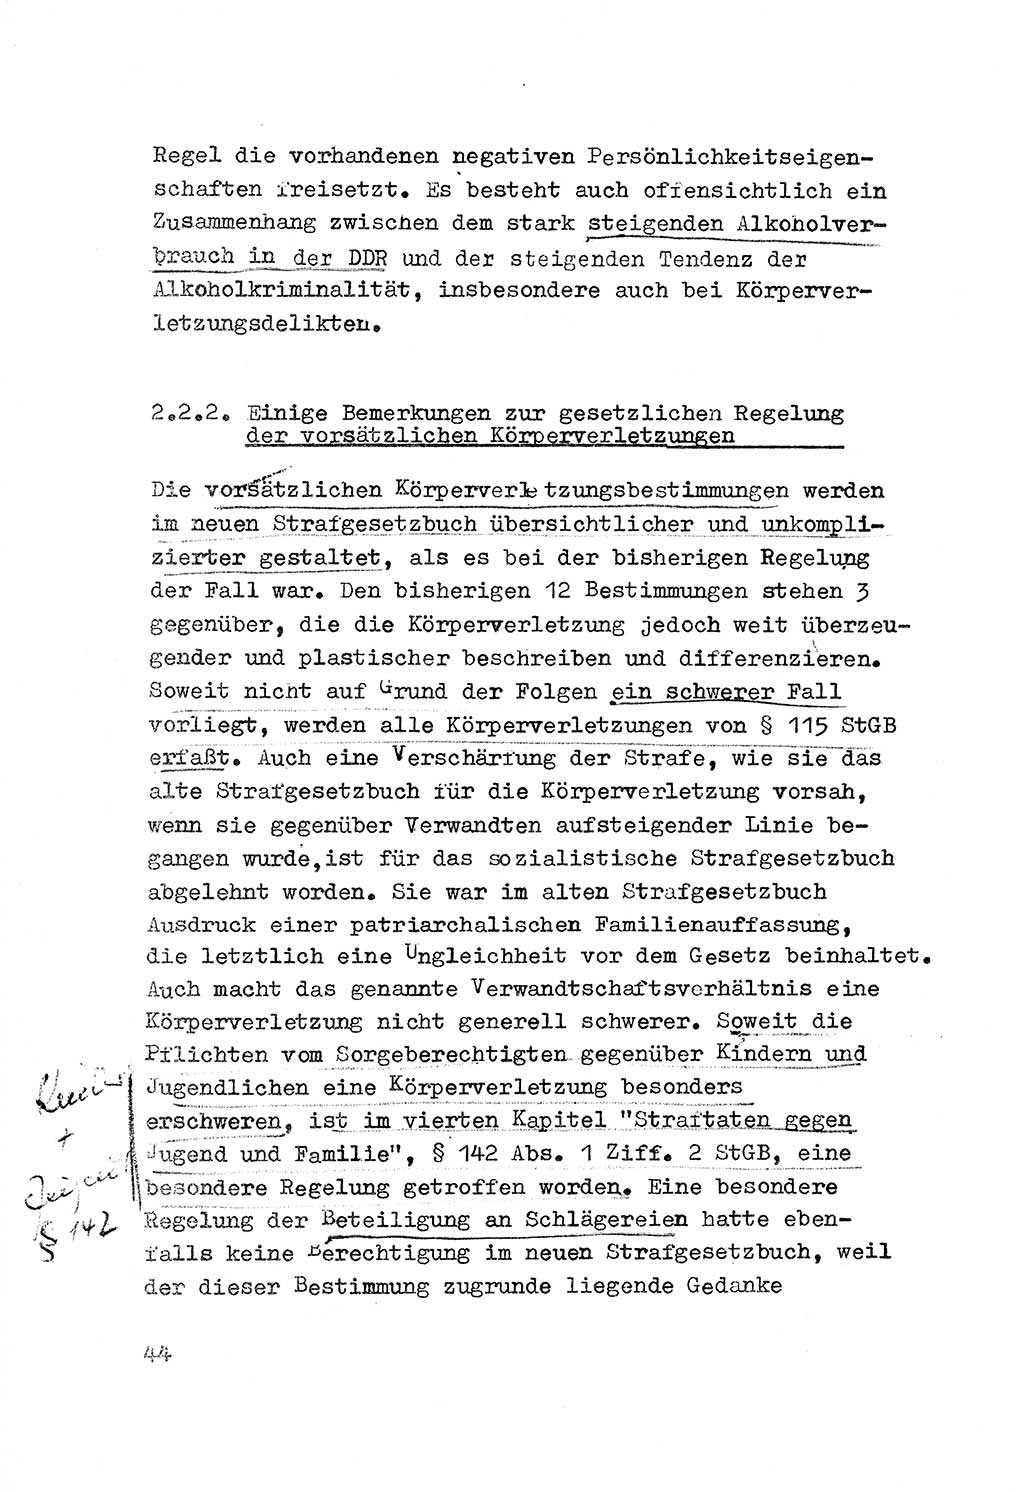 Strafrecht der DDR (Deutsche Demokratische Republik), Besonderer Teil, Lehrmaterial, Heft 3 1969, Seite 44 (Strafr. DDR BT Lehrmat. H. 3 1969, S. 44)